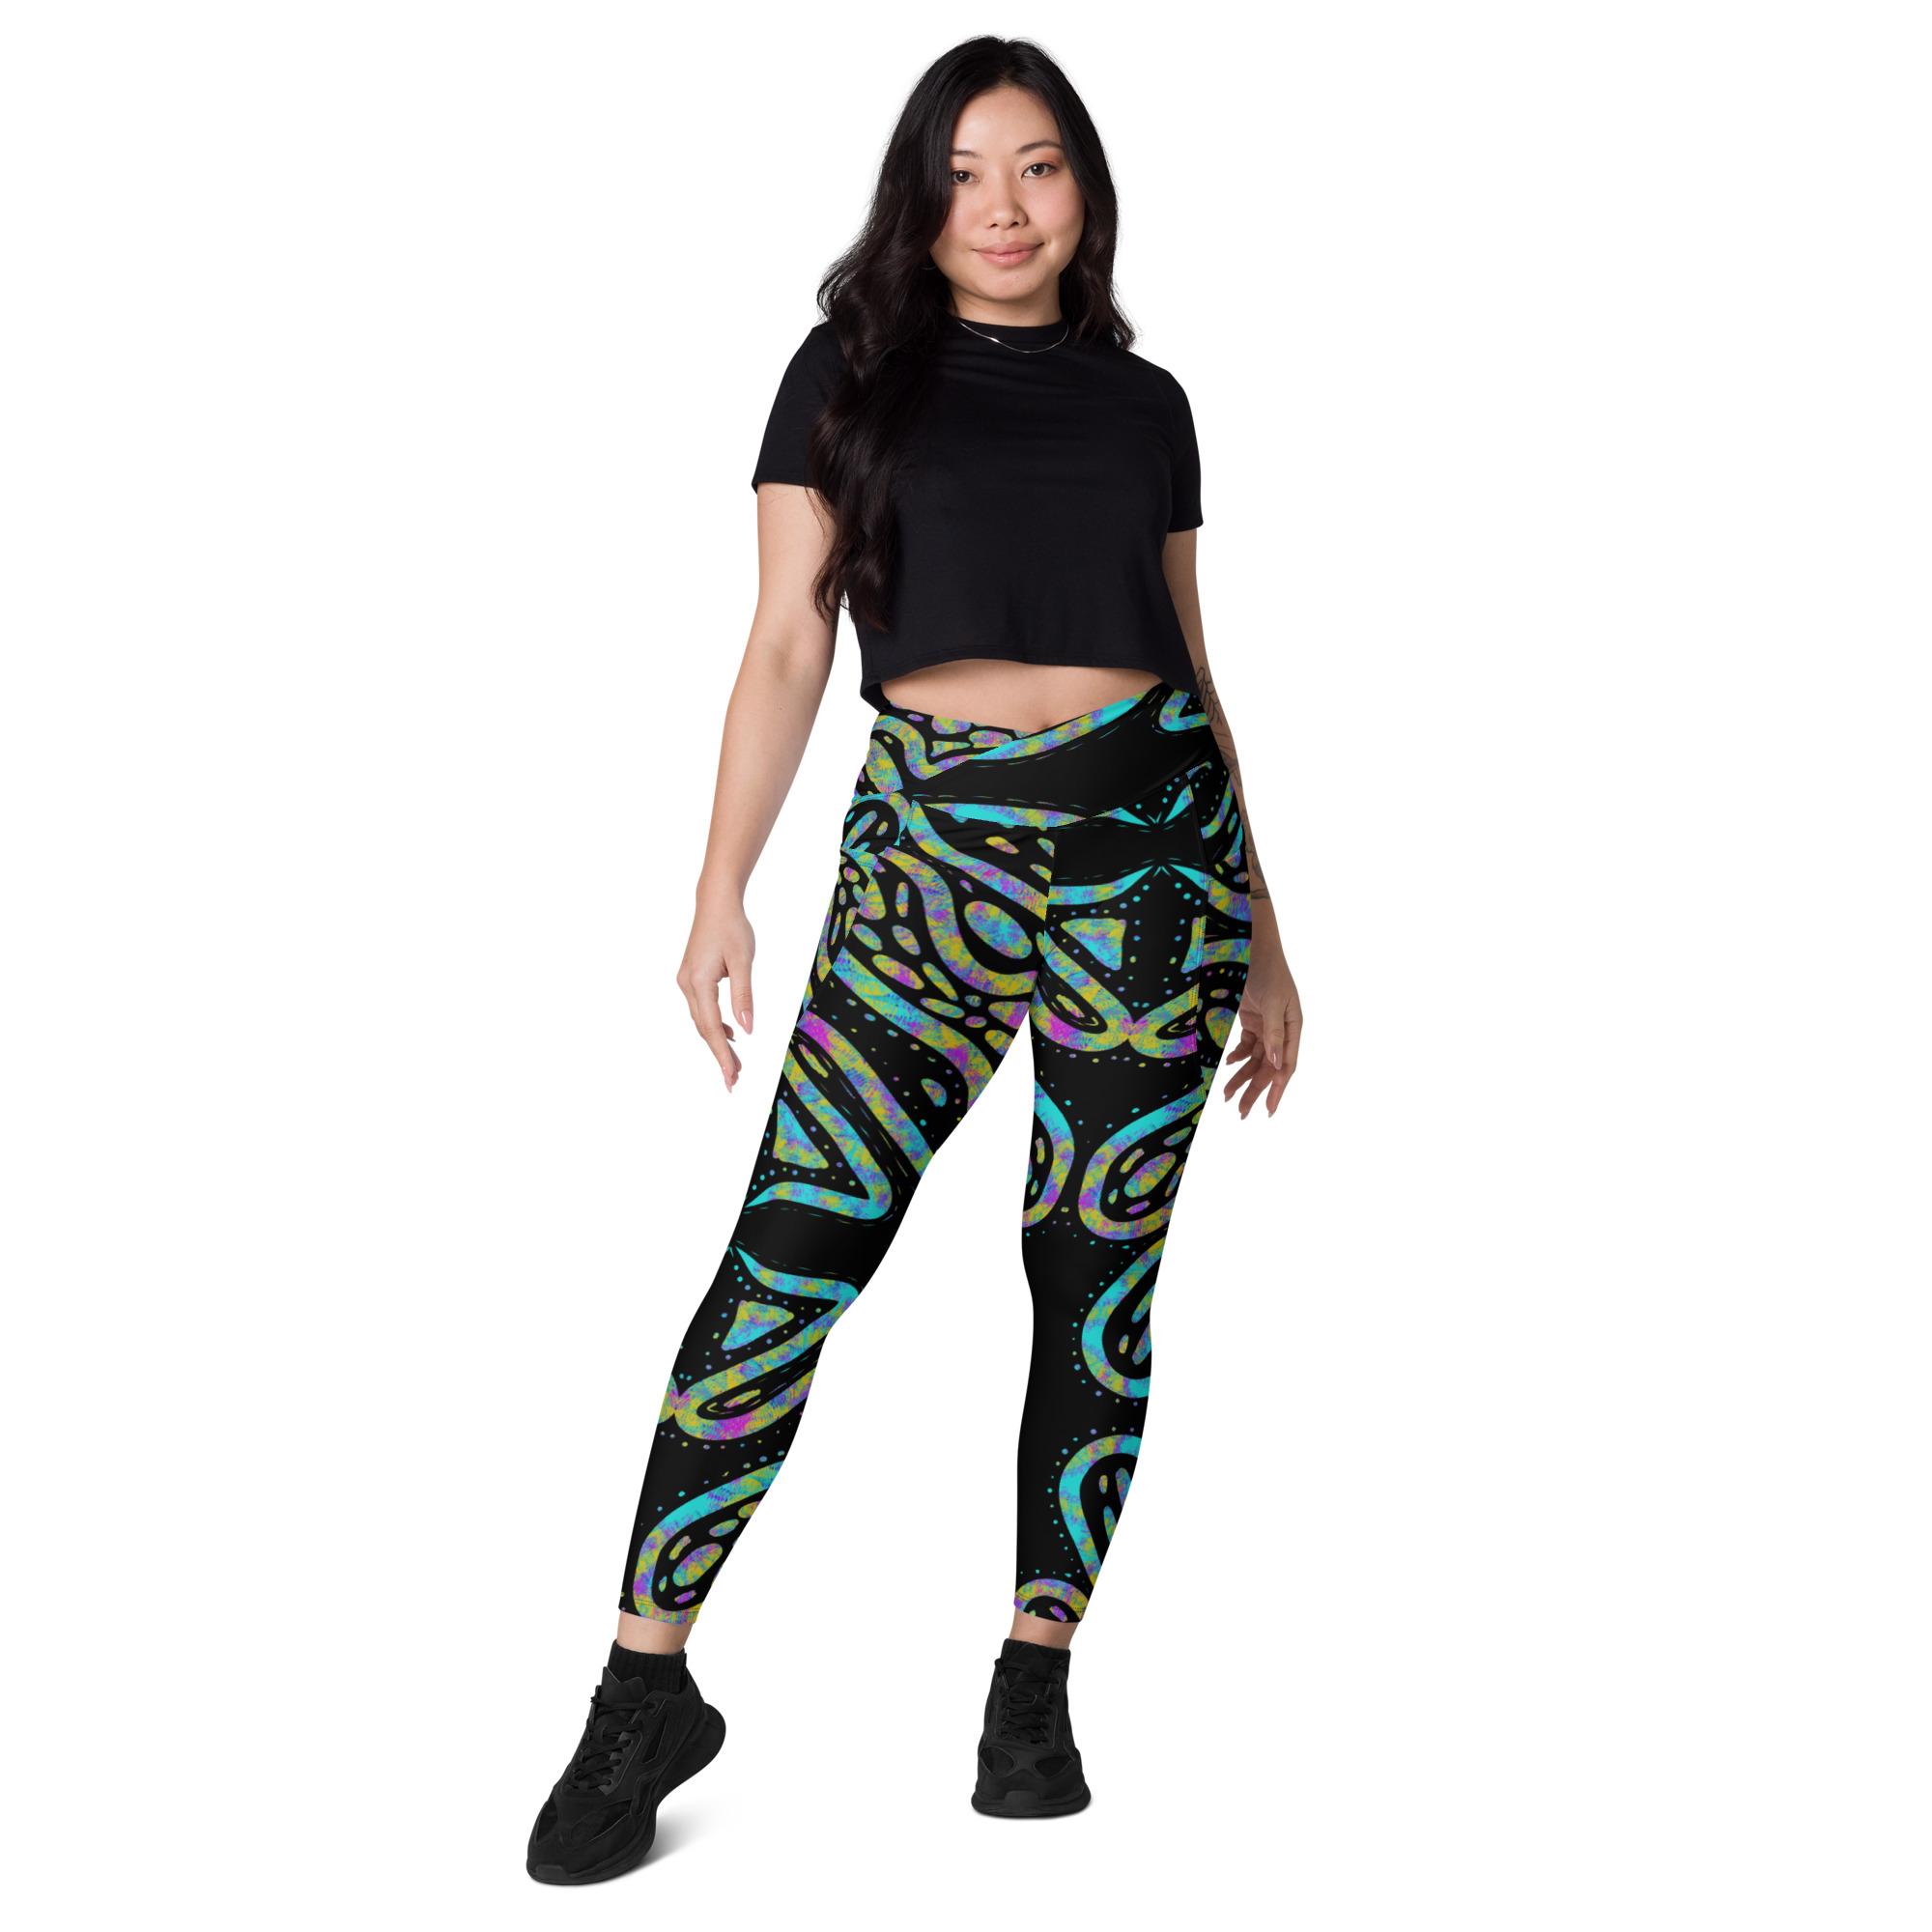 Tara Crossover leggings with pockets – Deb El Designs